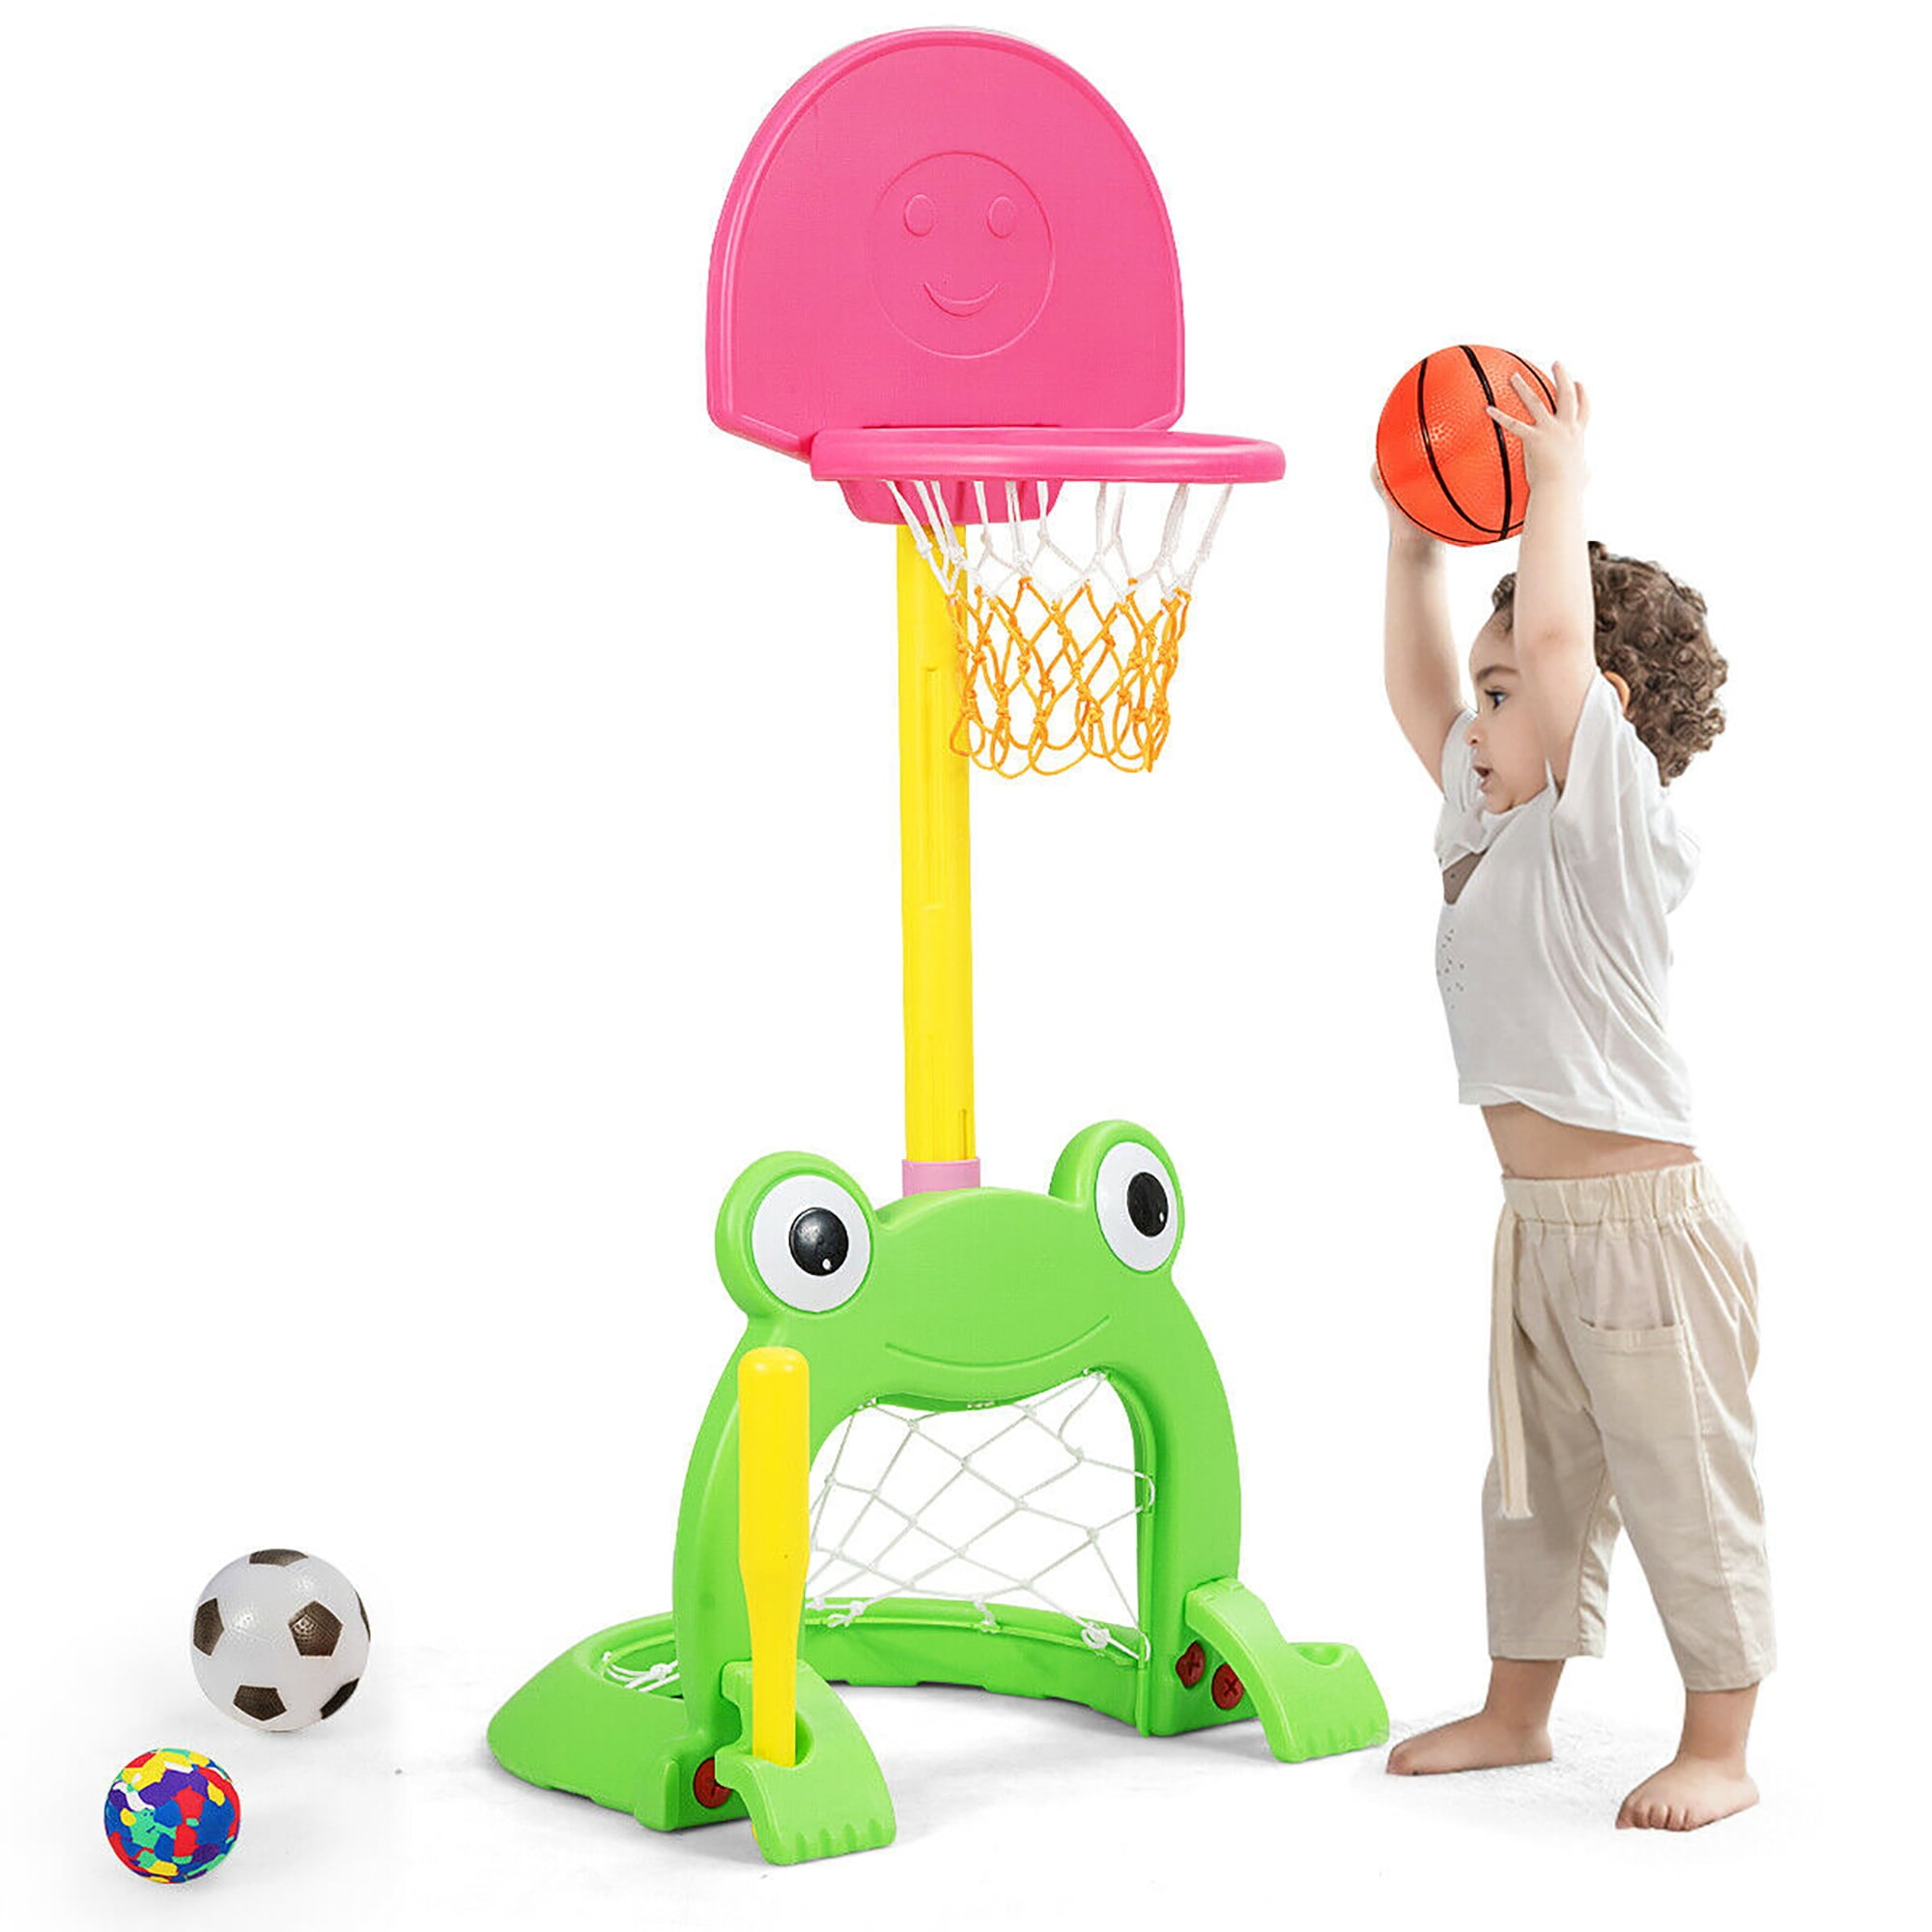 3in1 Outdoor Indoor Kids Toddler Basktaball Hoop Stand Soccer Toss Ring Playset 